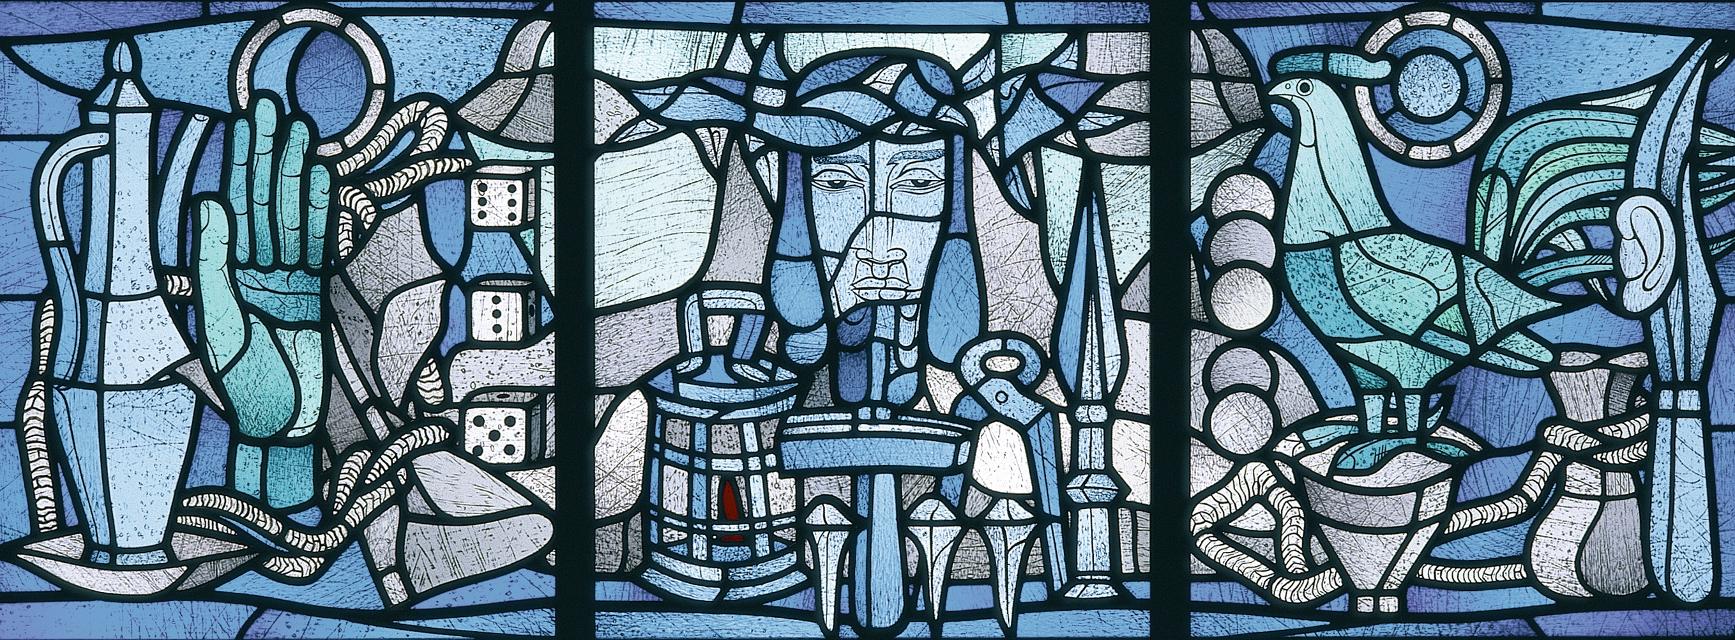 Buntglasfenster von Heinrich Campendonk, dreiteilig, querformat mit christlichen Motiven.